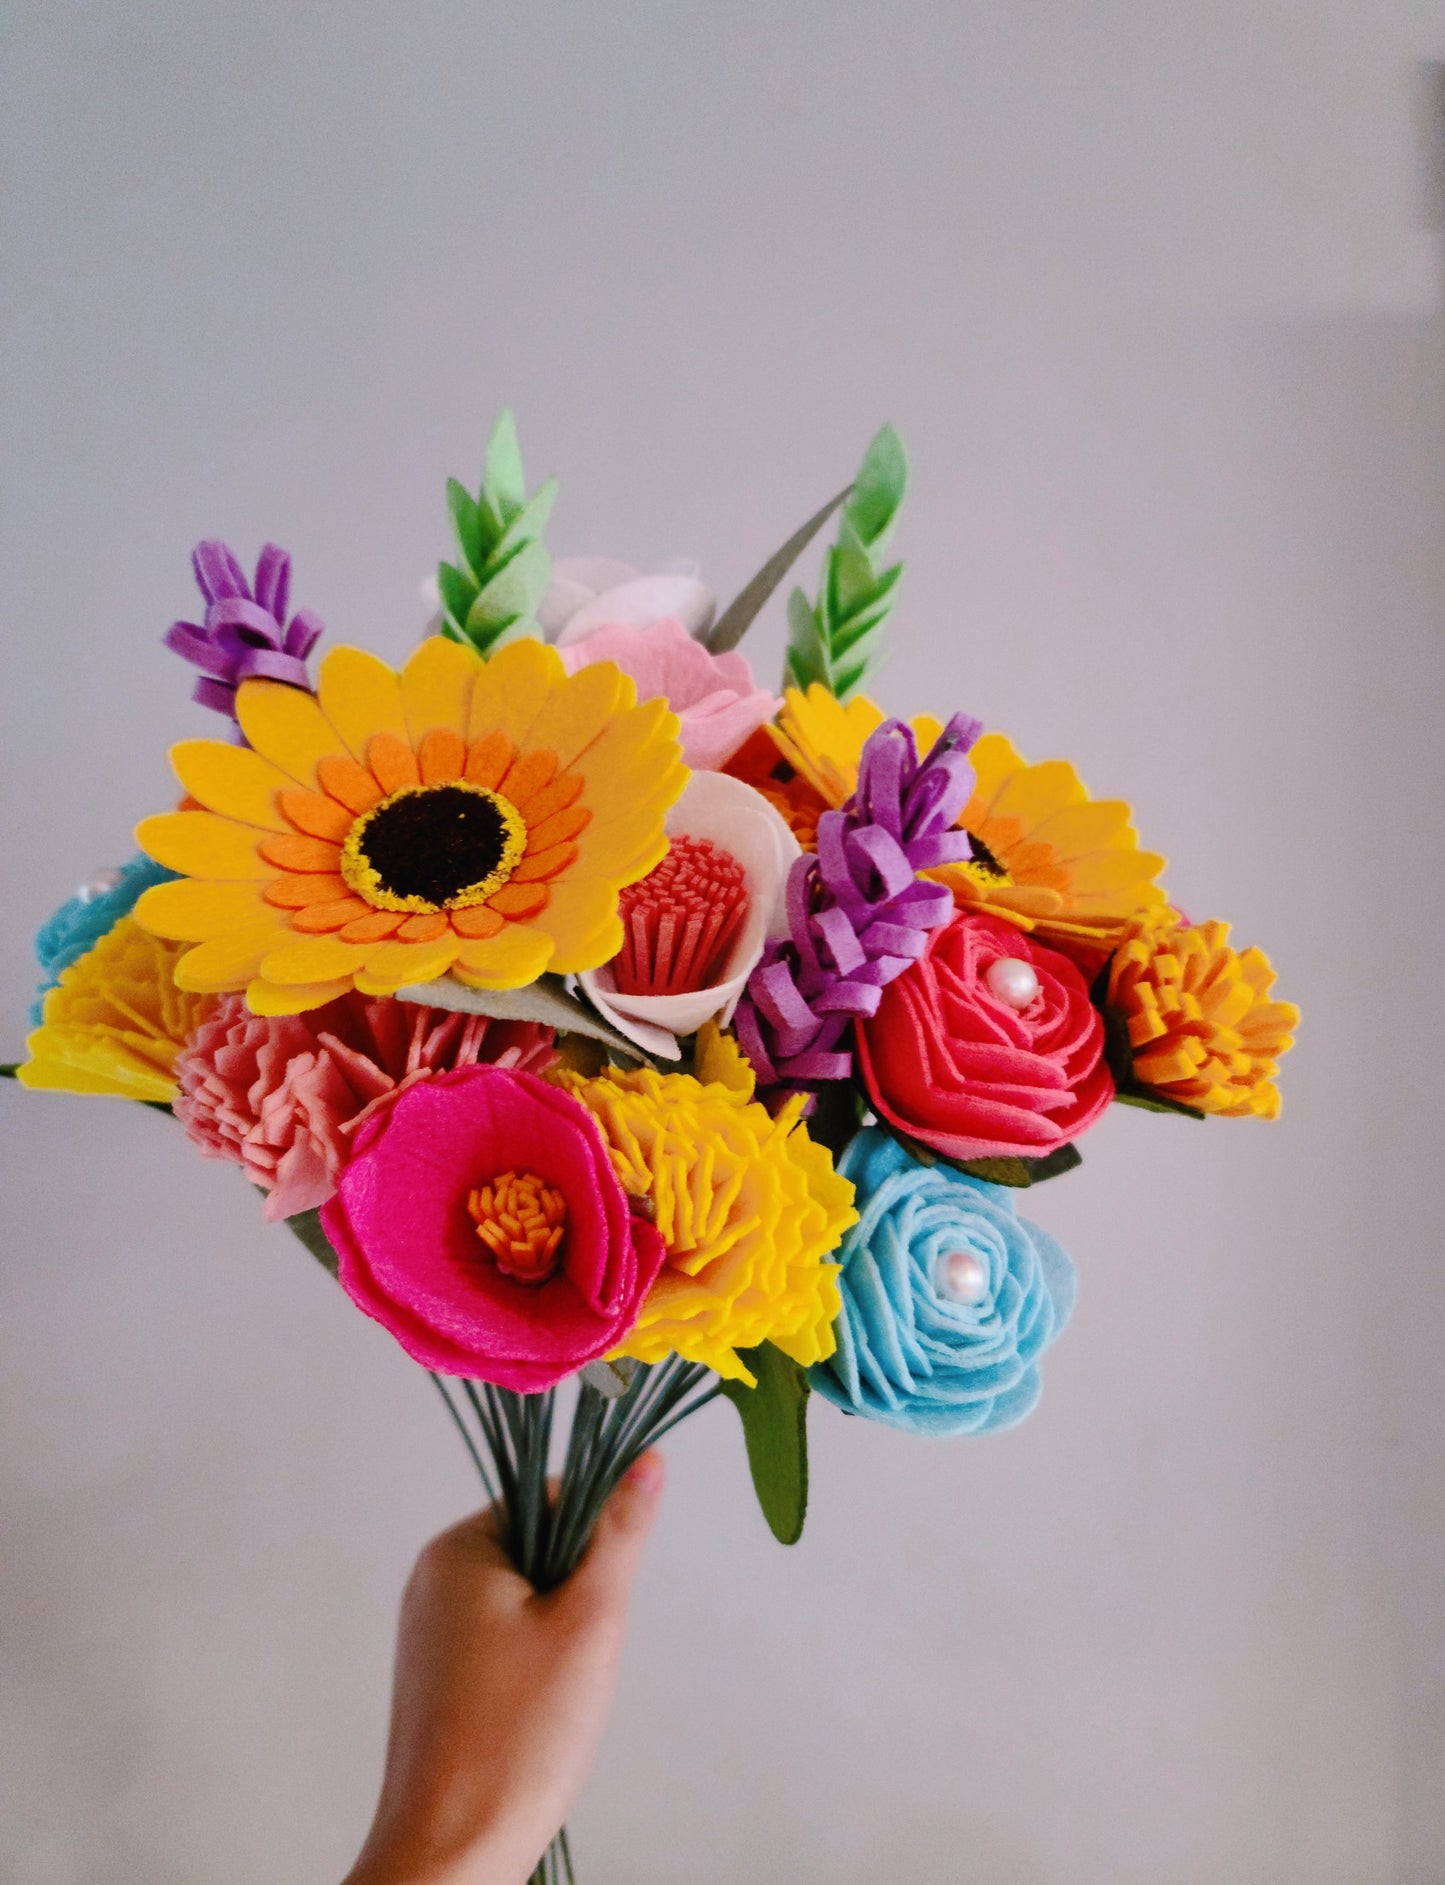 Felt flower bouquet kit - NEW! Big Felt flower bouquet, Felt flowers DIY kit, No Cutting, Sunflowers, Carnations, lavenders, Roses